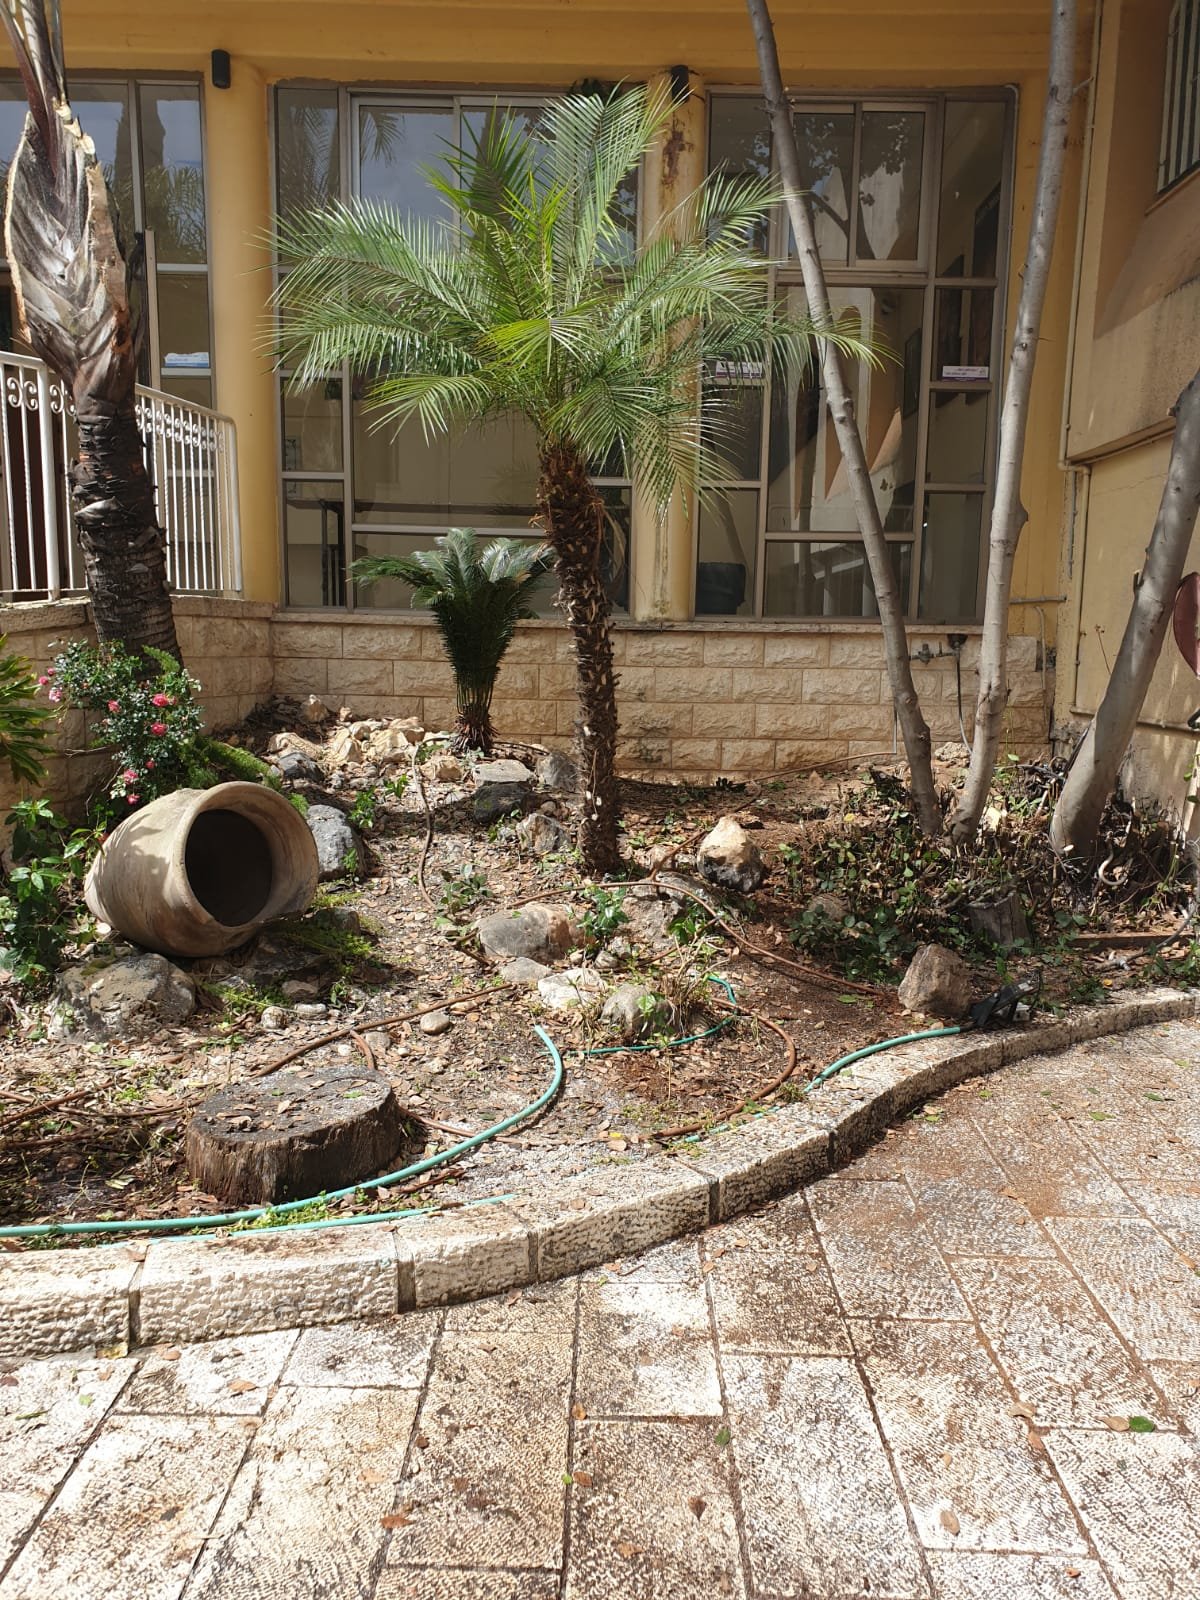 اعمال صيانة وتنظيف وبستنة في المركز الثفافي-محمود درويش-2